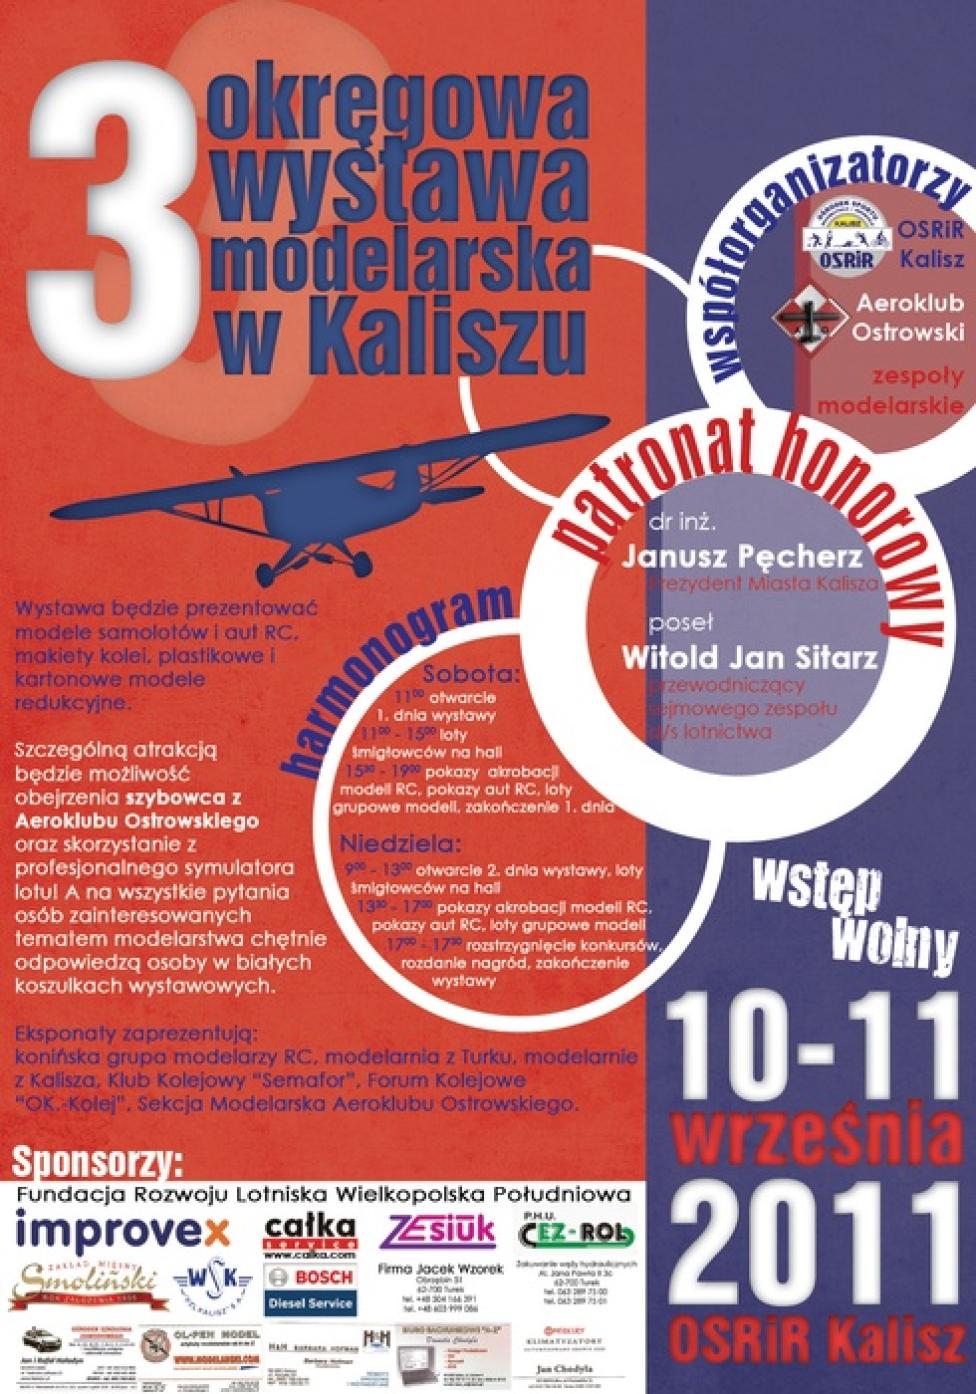 3. Okręgowa Wystawa Modelarska w Kaliszu (plakat)